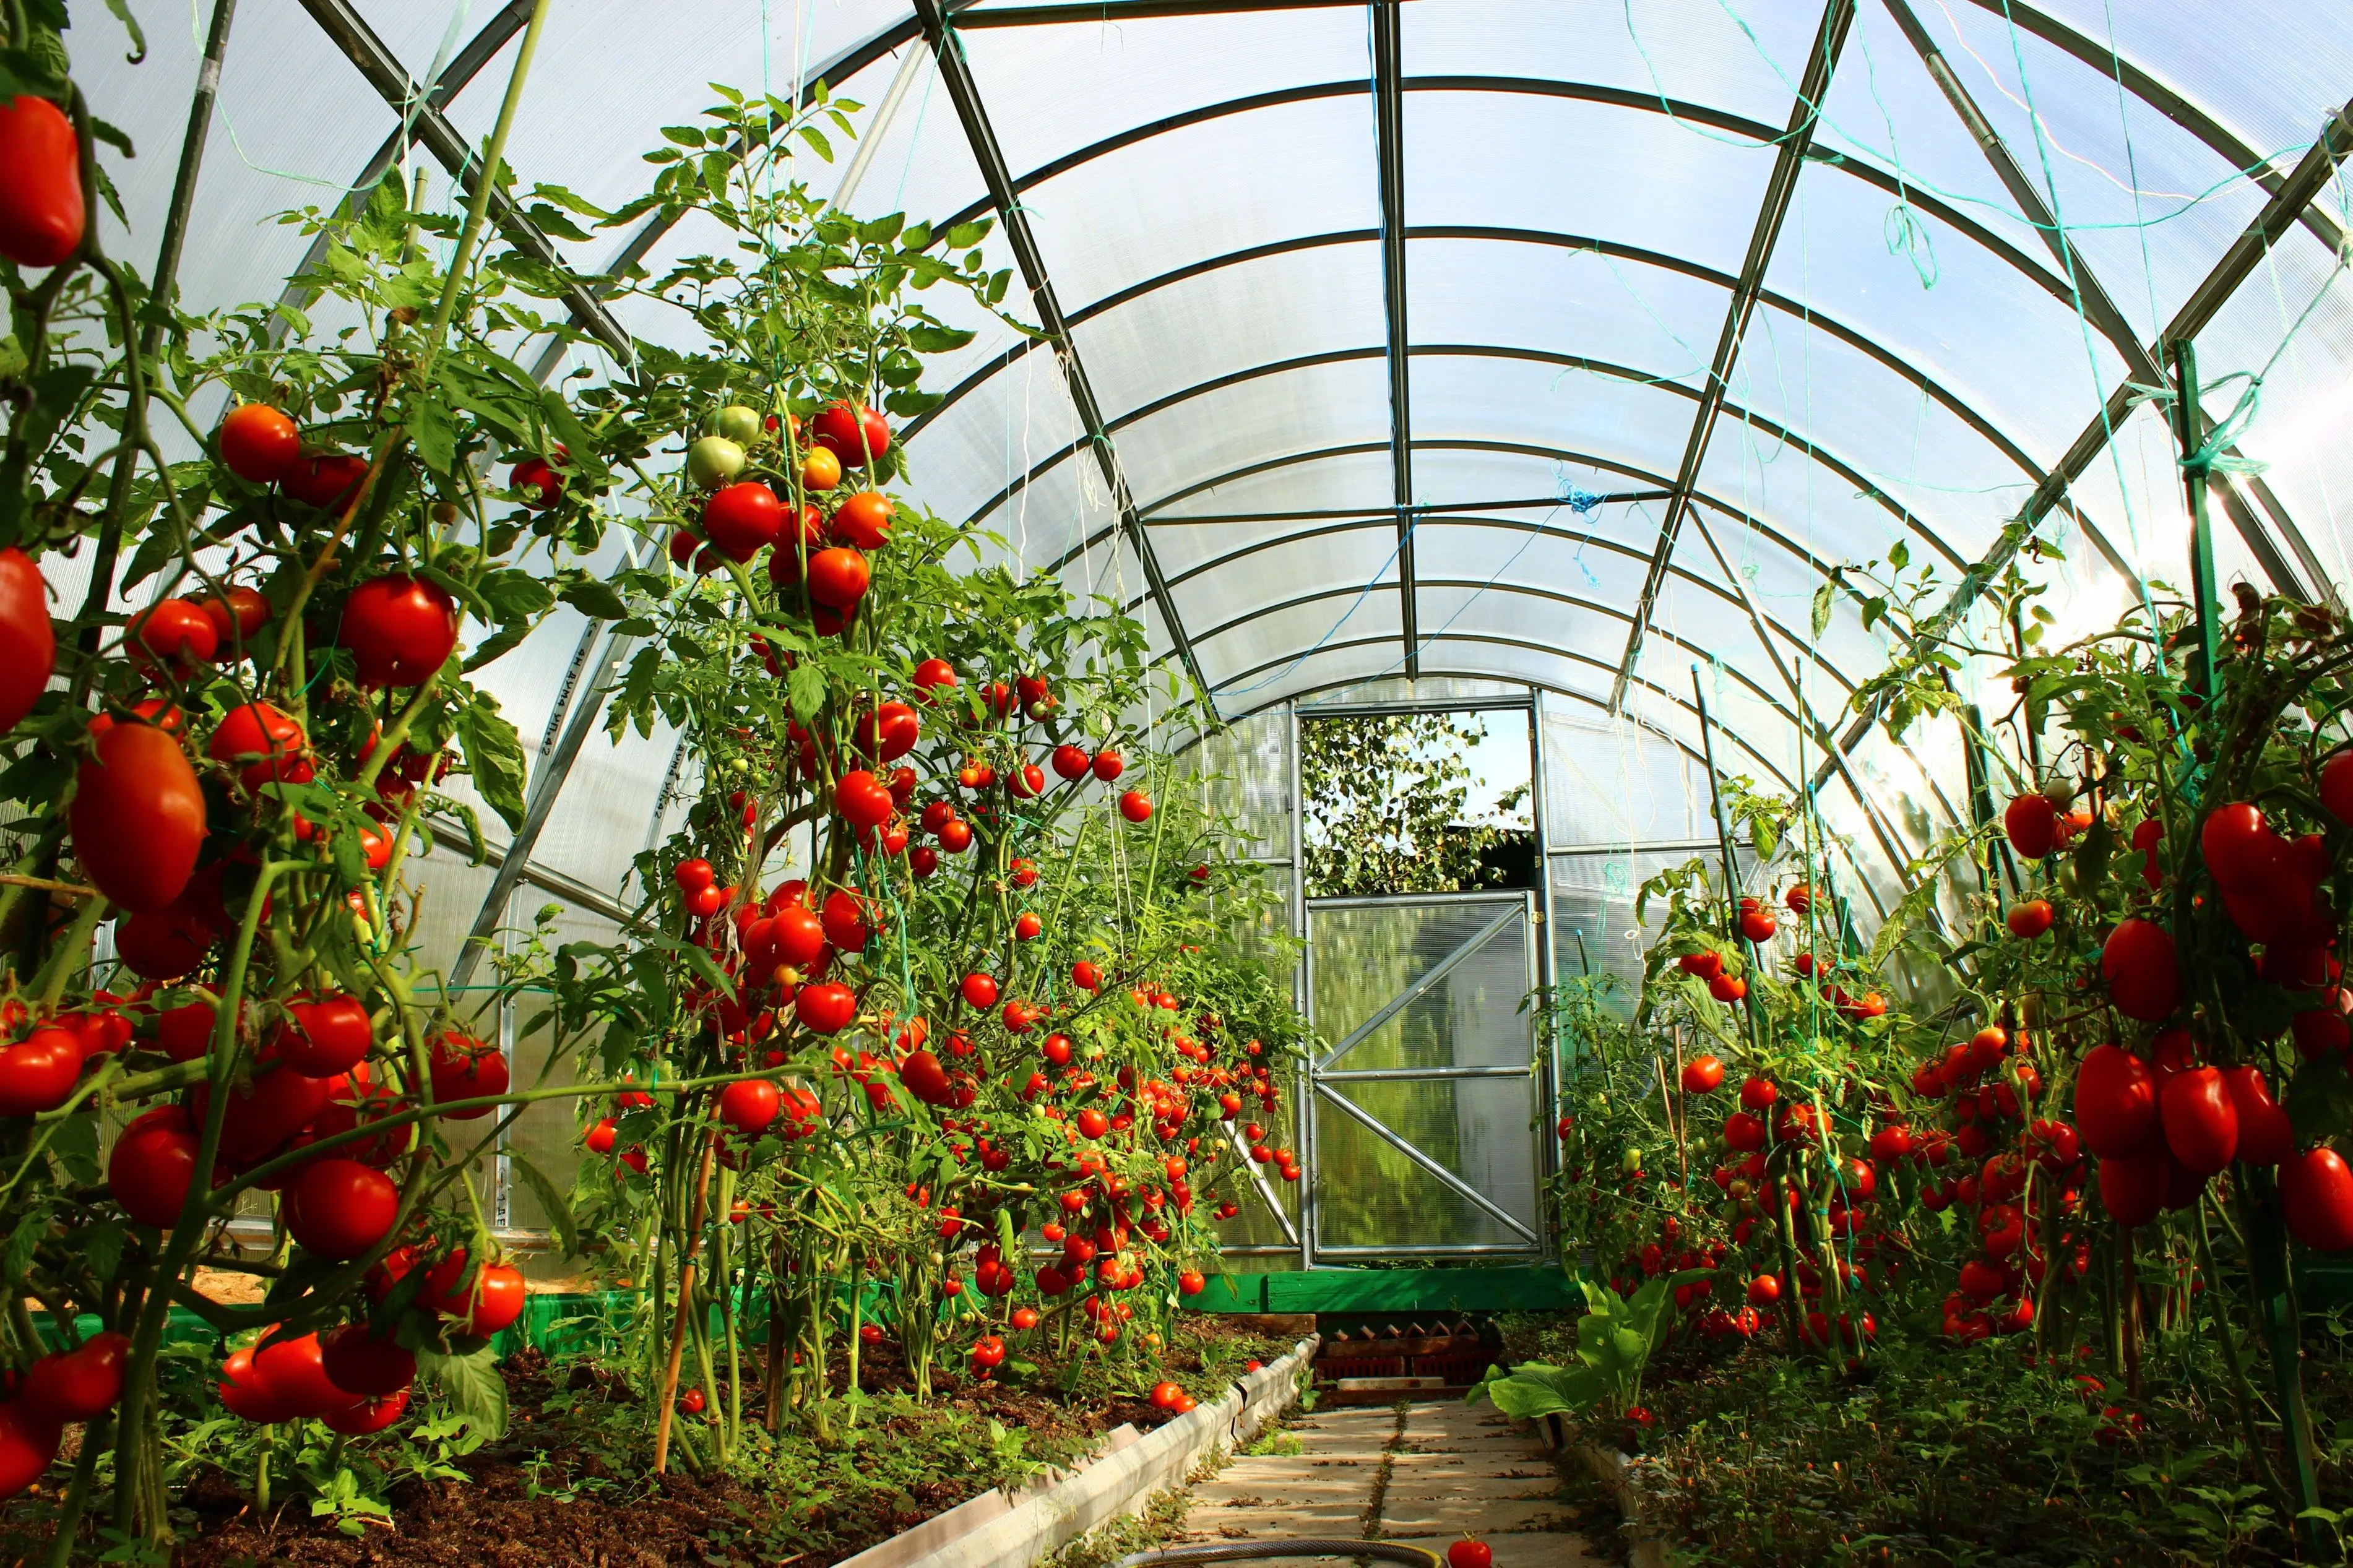 Как добиться высокого урожая томатов при выращивании в теплицах?